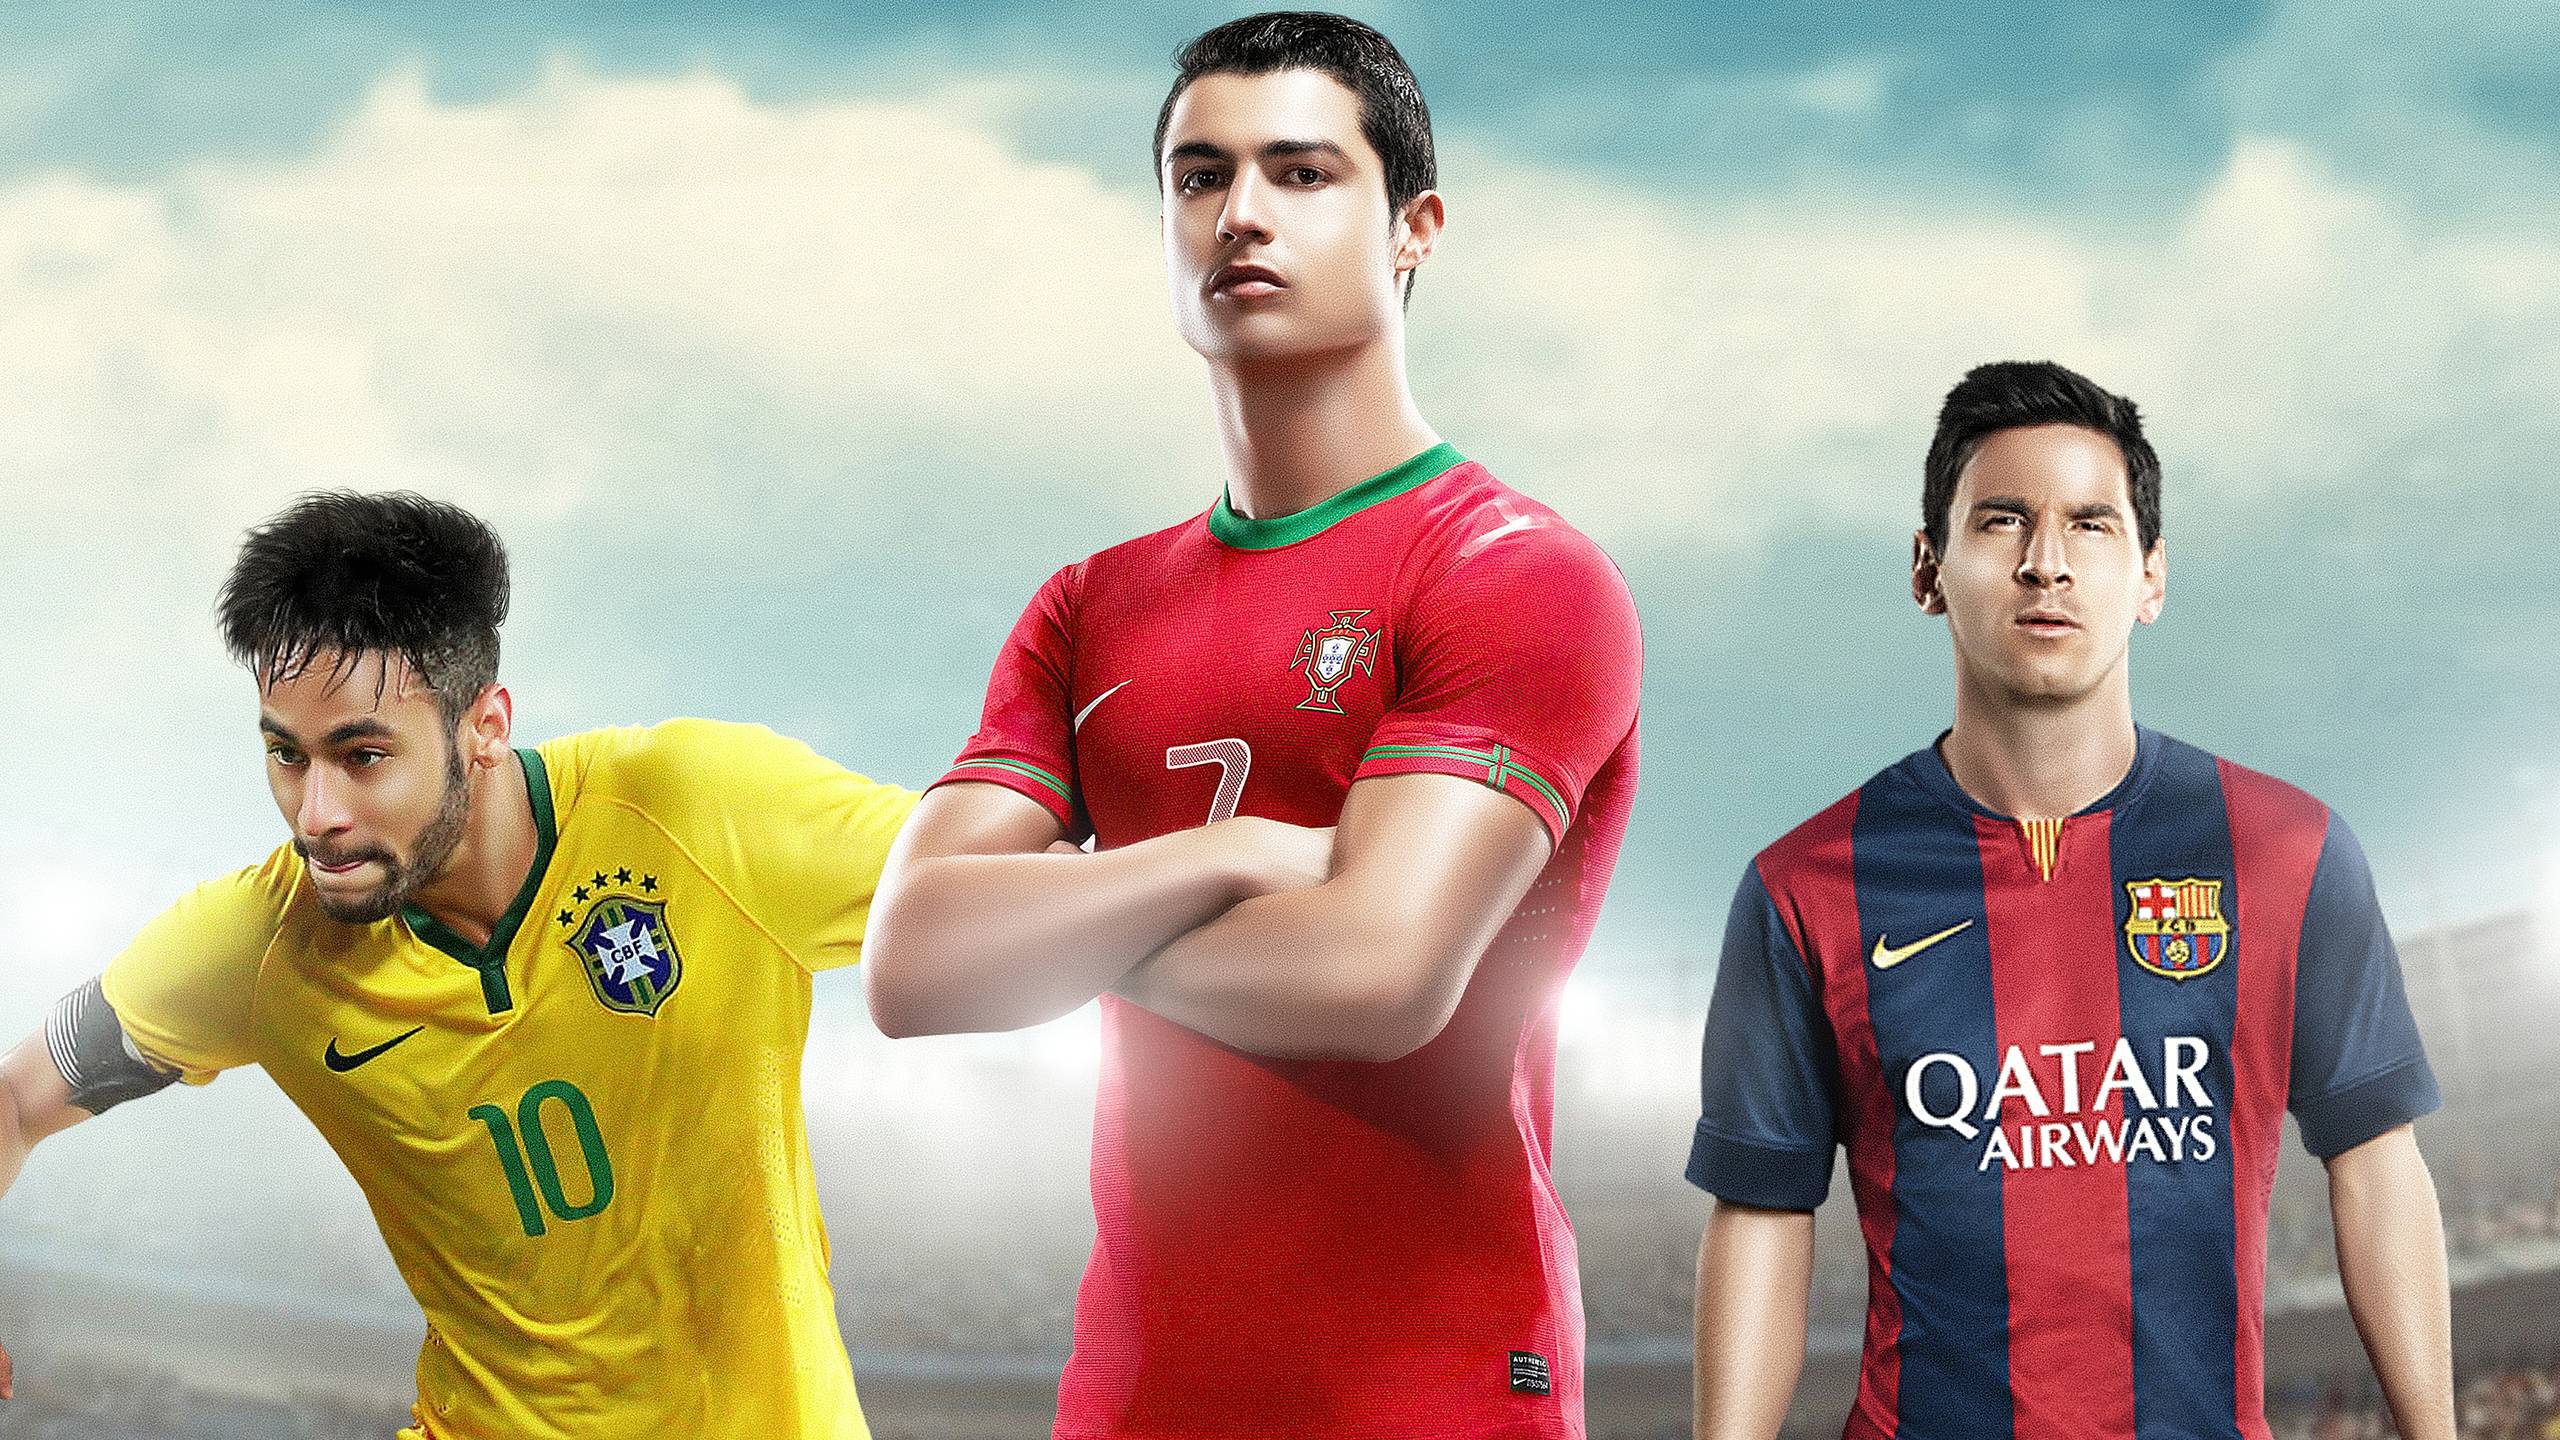 Wallpaper Football 4K Mbappe Messi Ronaldo Neymar for Android